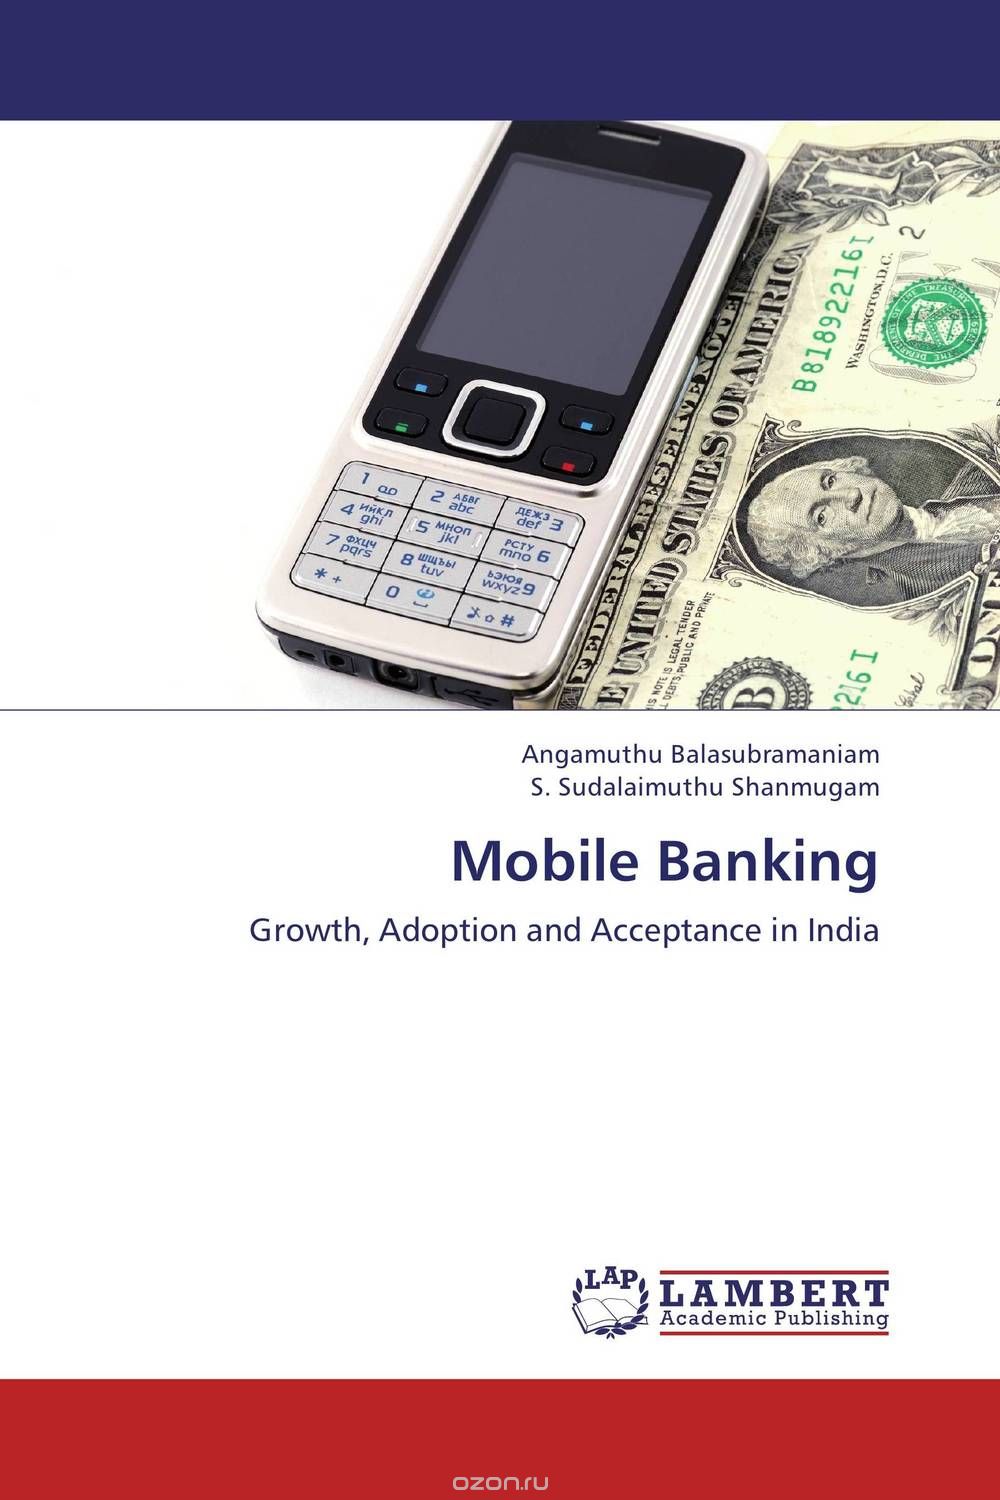 Скачать книгу "Mobile Banking"